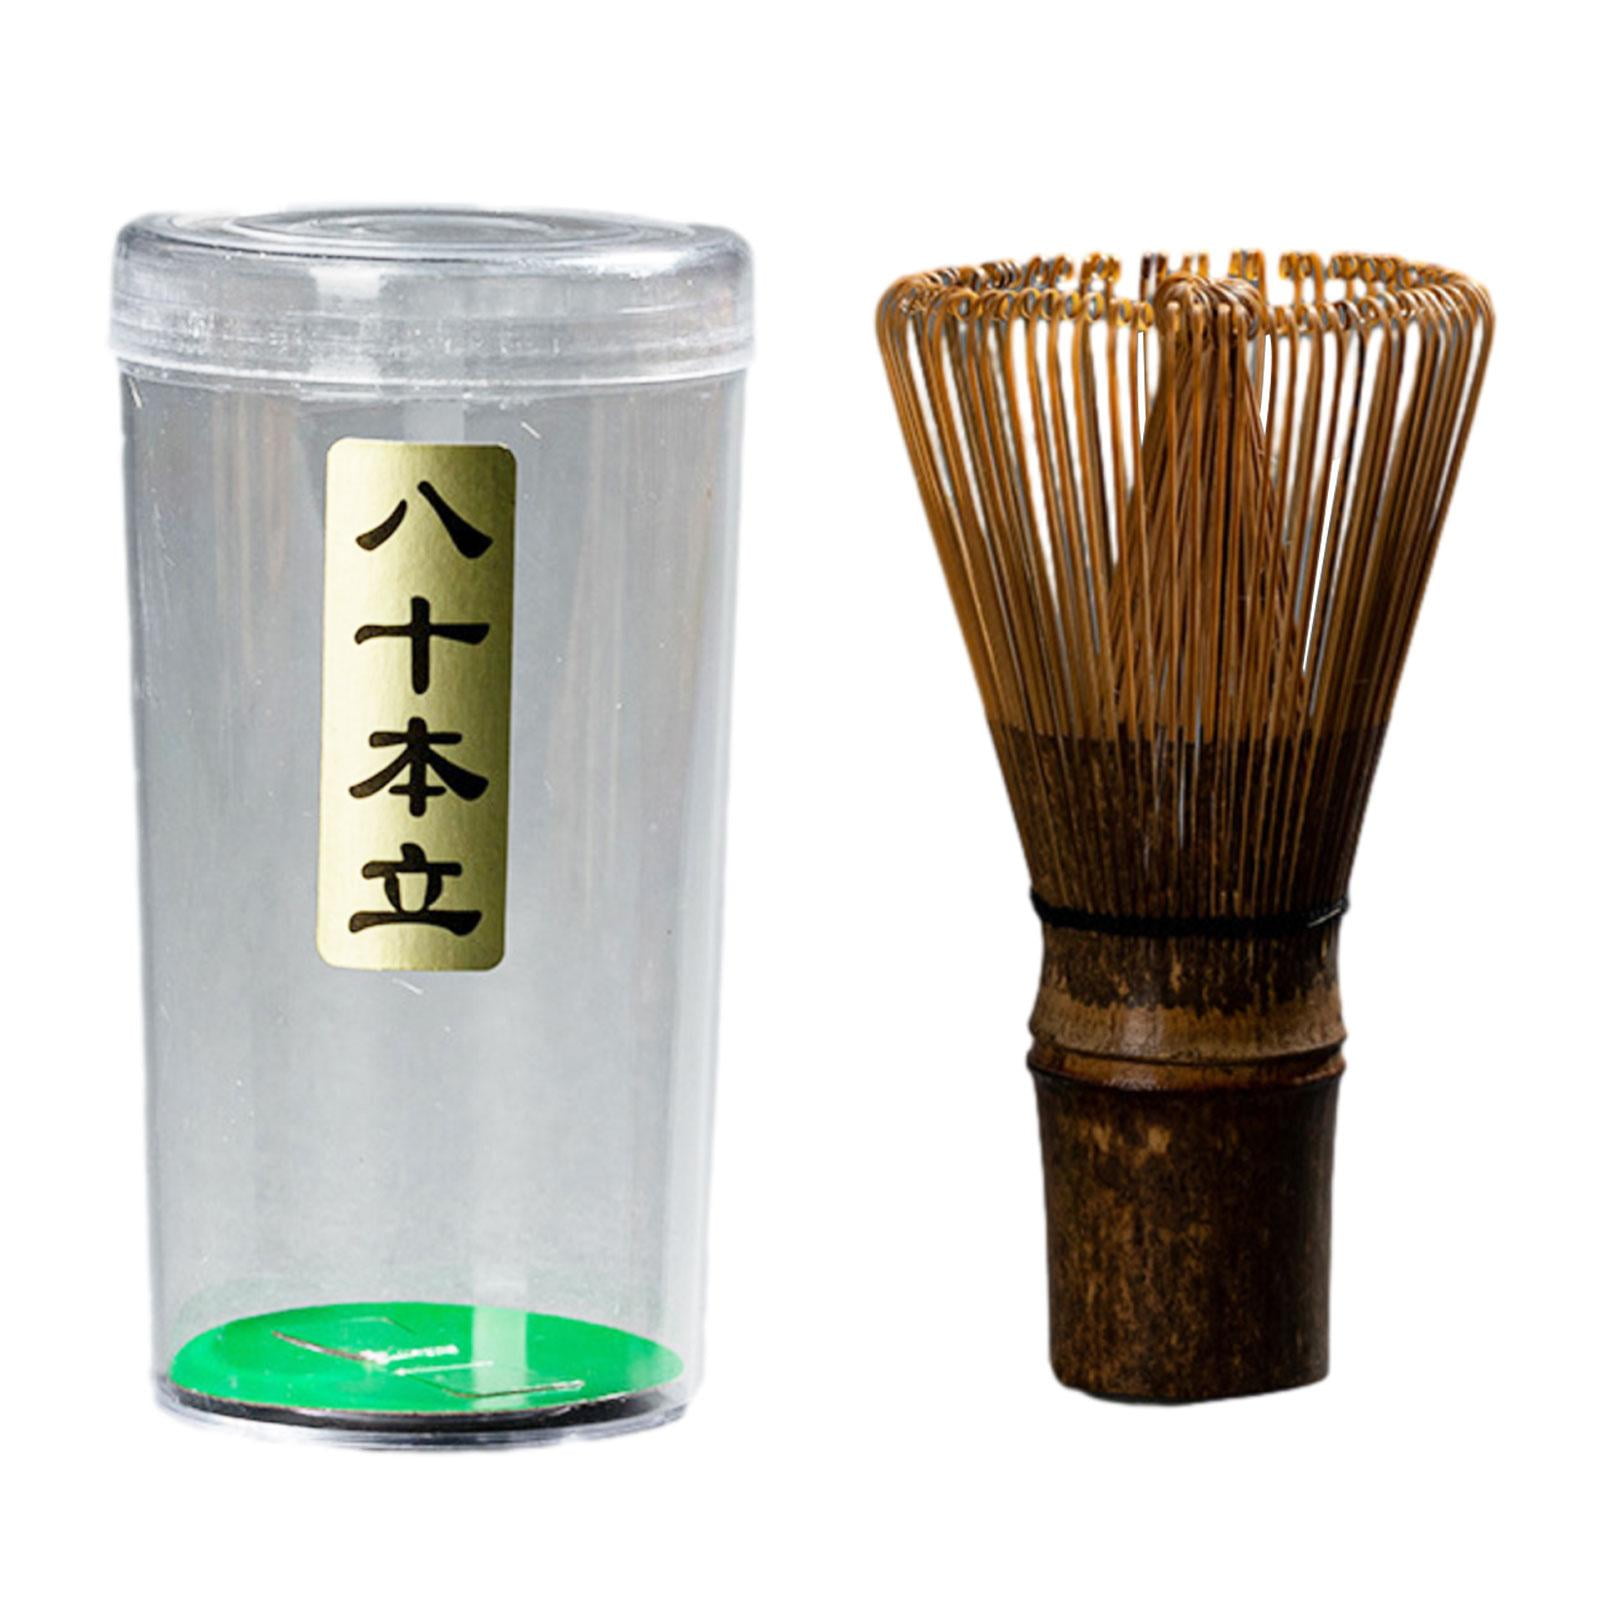 Matcha Whisk Bamboo – Clipper Ship Tea Company